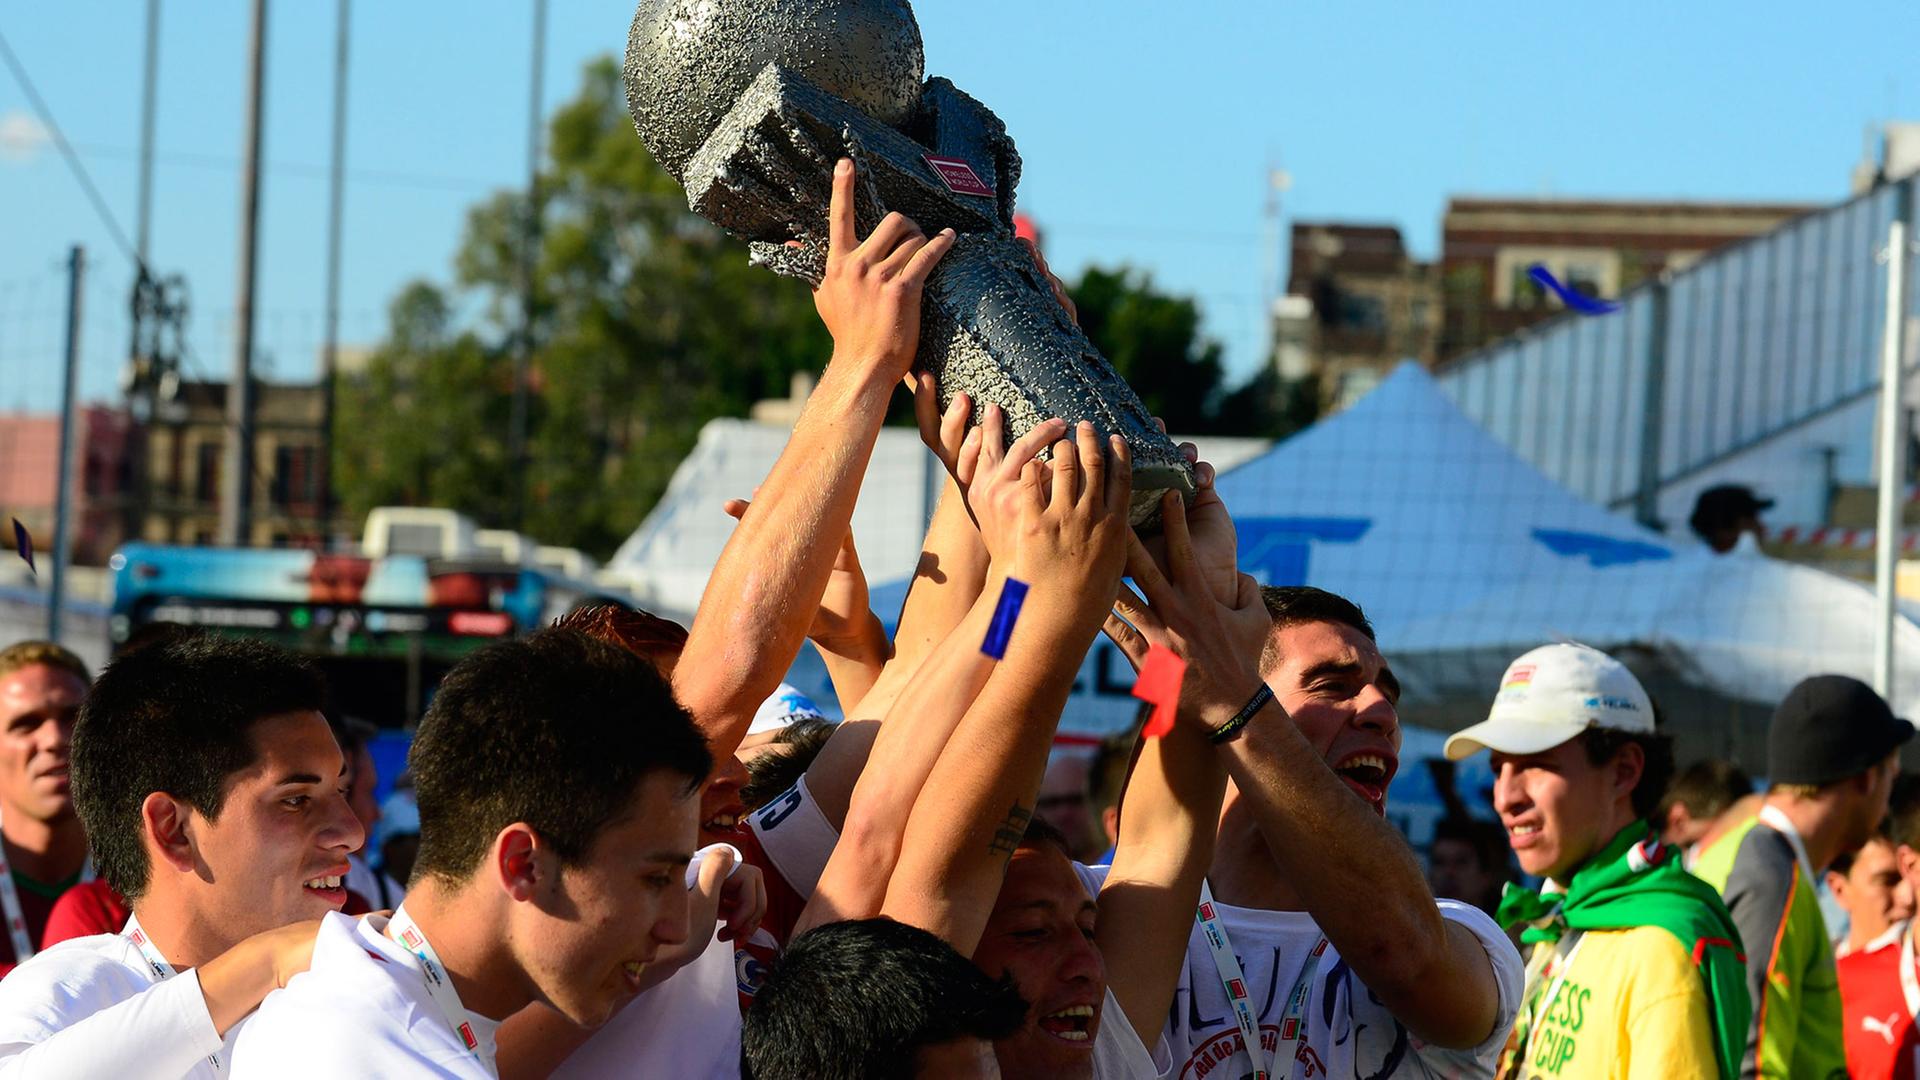 Die Spieler des chilenischen Teams feiern am 14.10.2012 in Mexiko City ihren Sieg über Mexiko im Finale des Homeless World Cup 2012 im Straßenfußball.